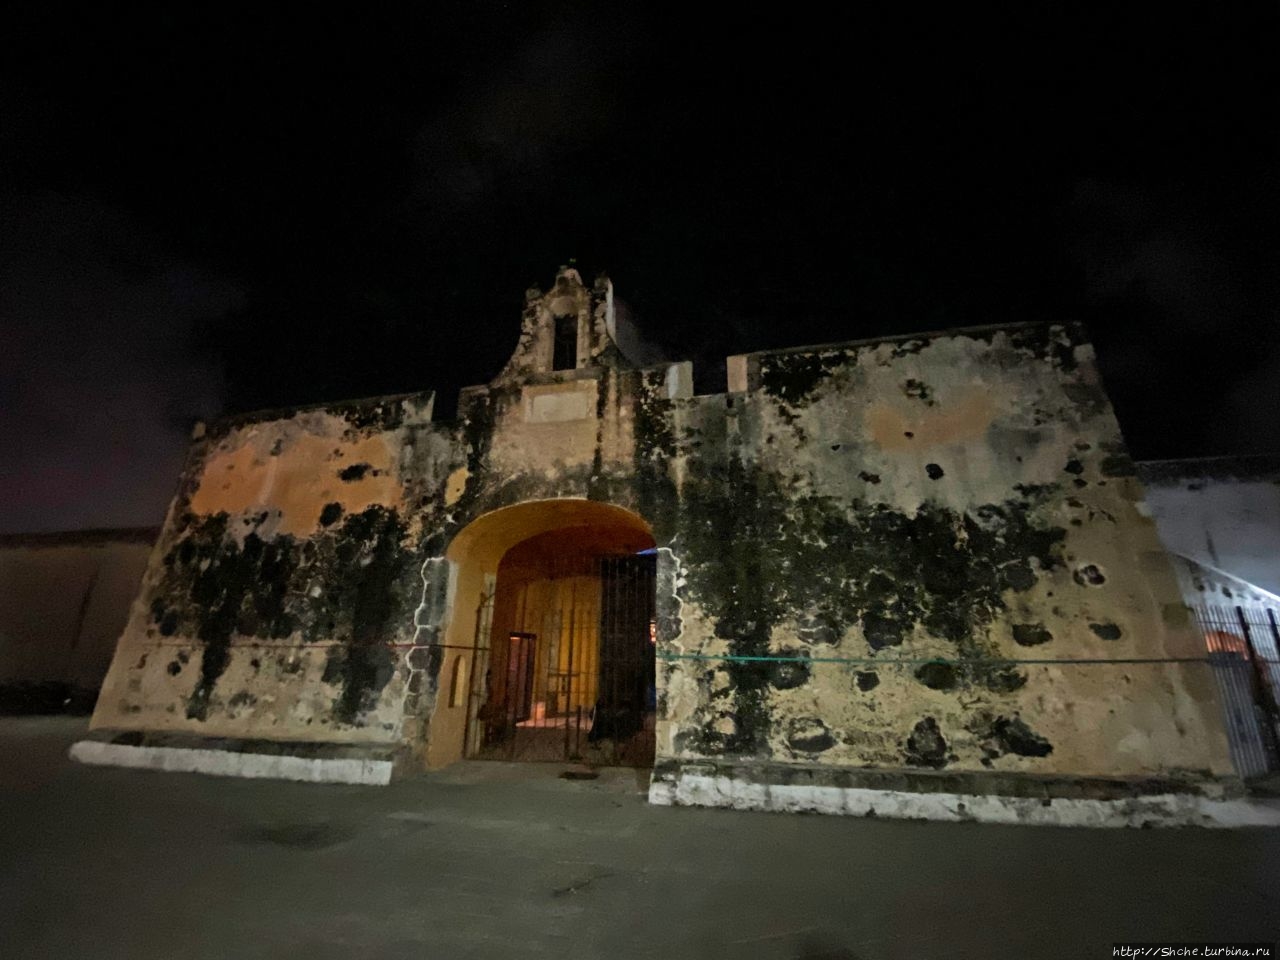 Бастион Сан-Педро Кампече, Мексика